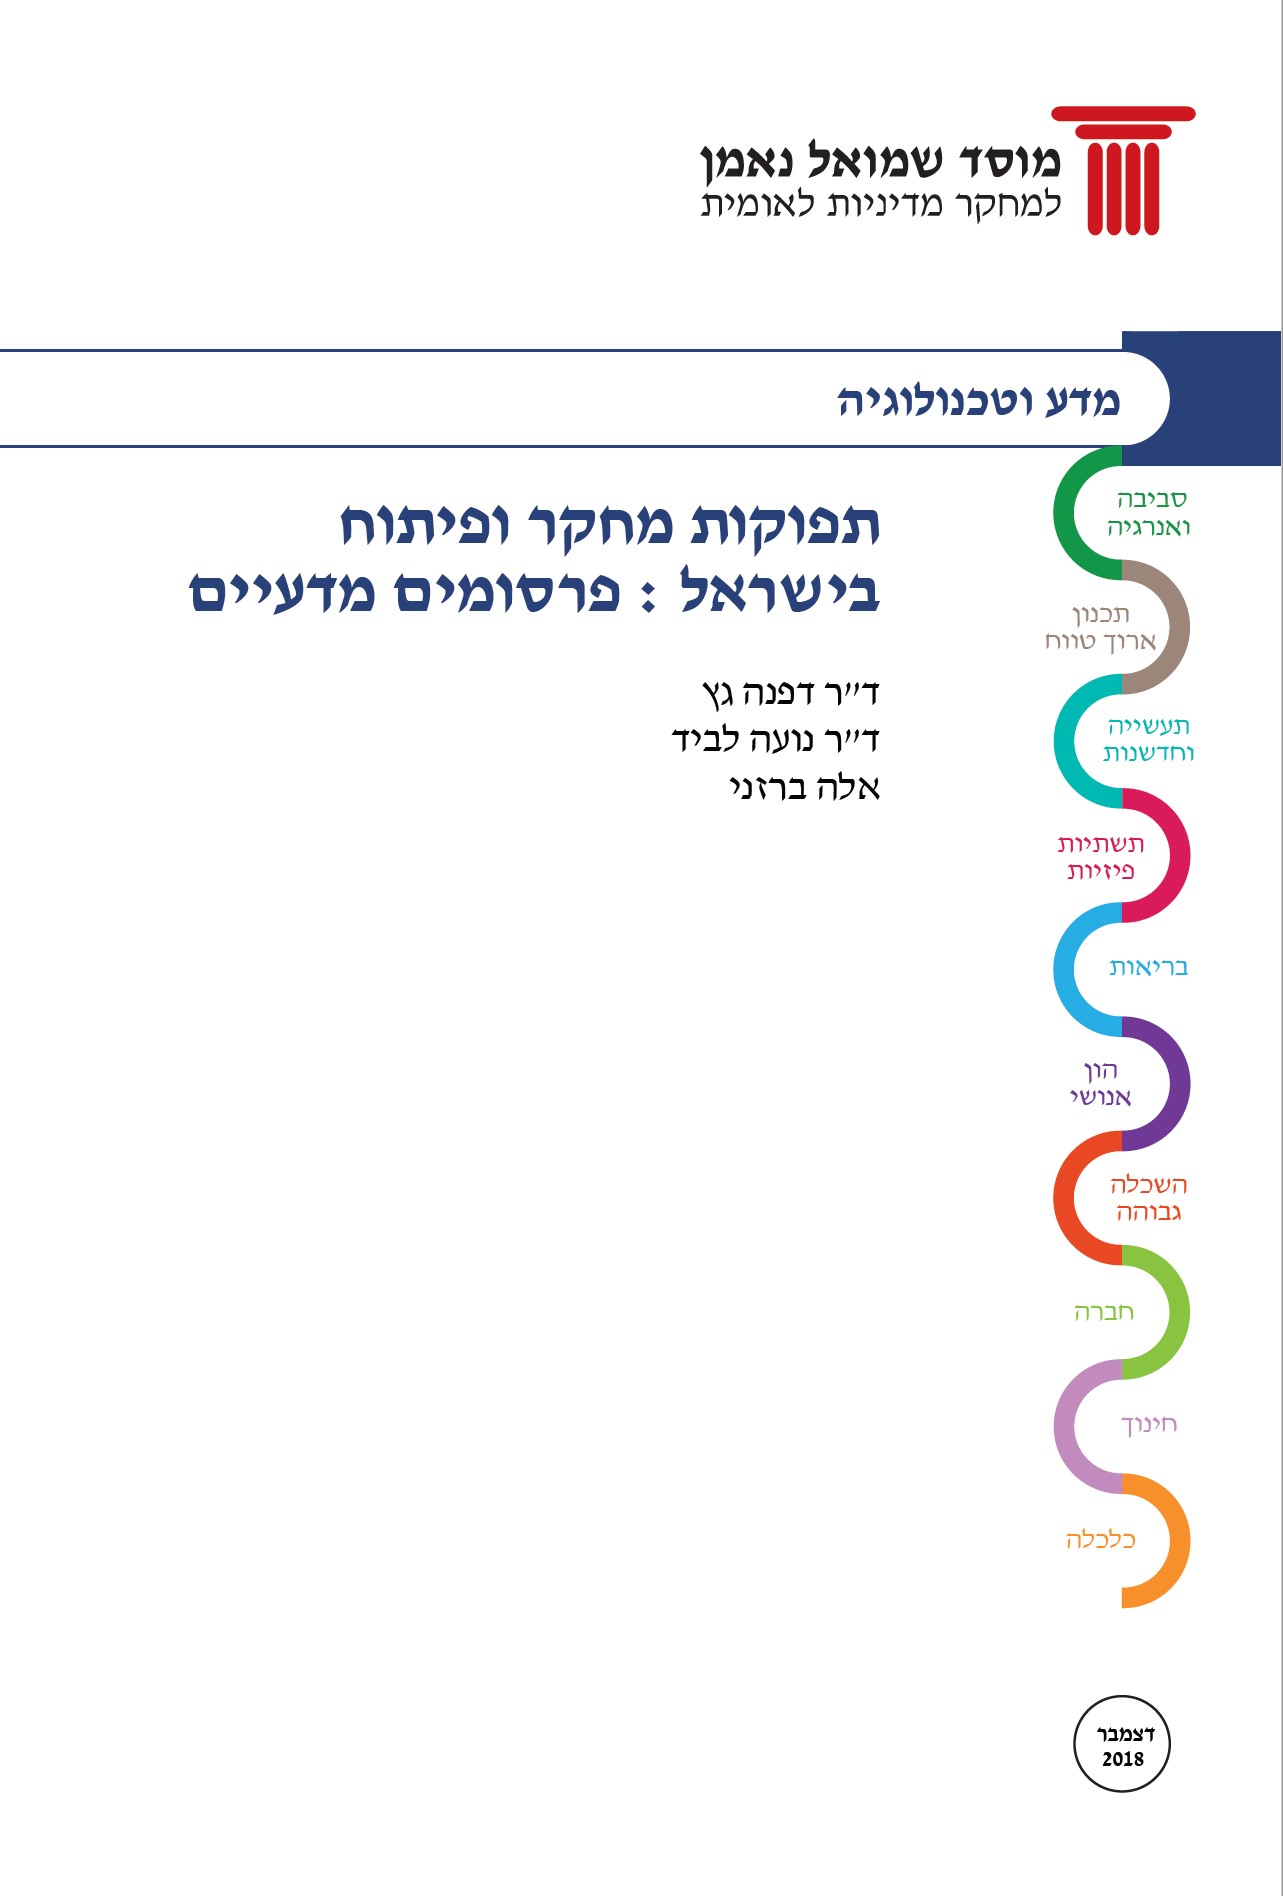 תפוקות מחקר ופיתוח בישראל / פרסומים מדעיים 